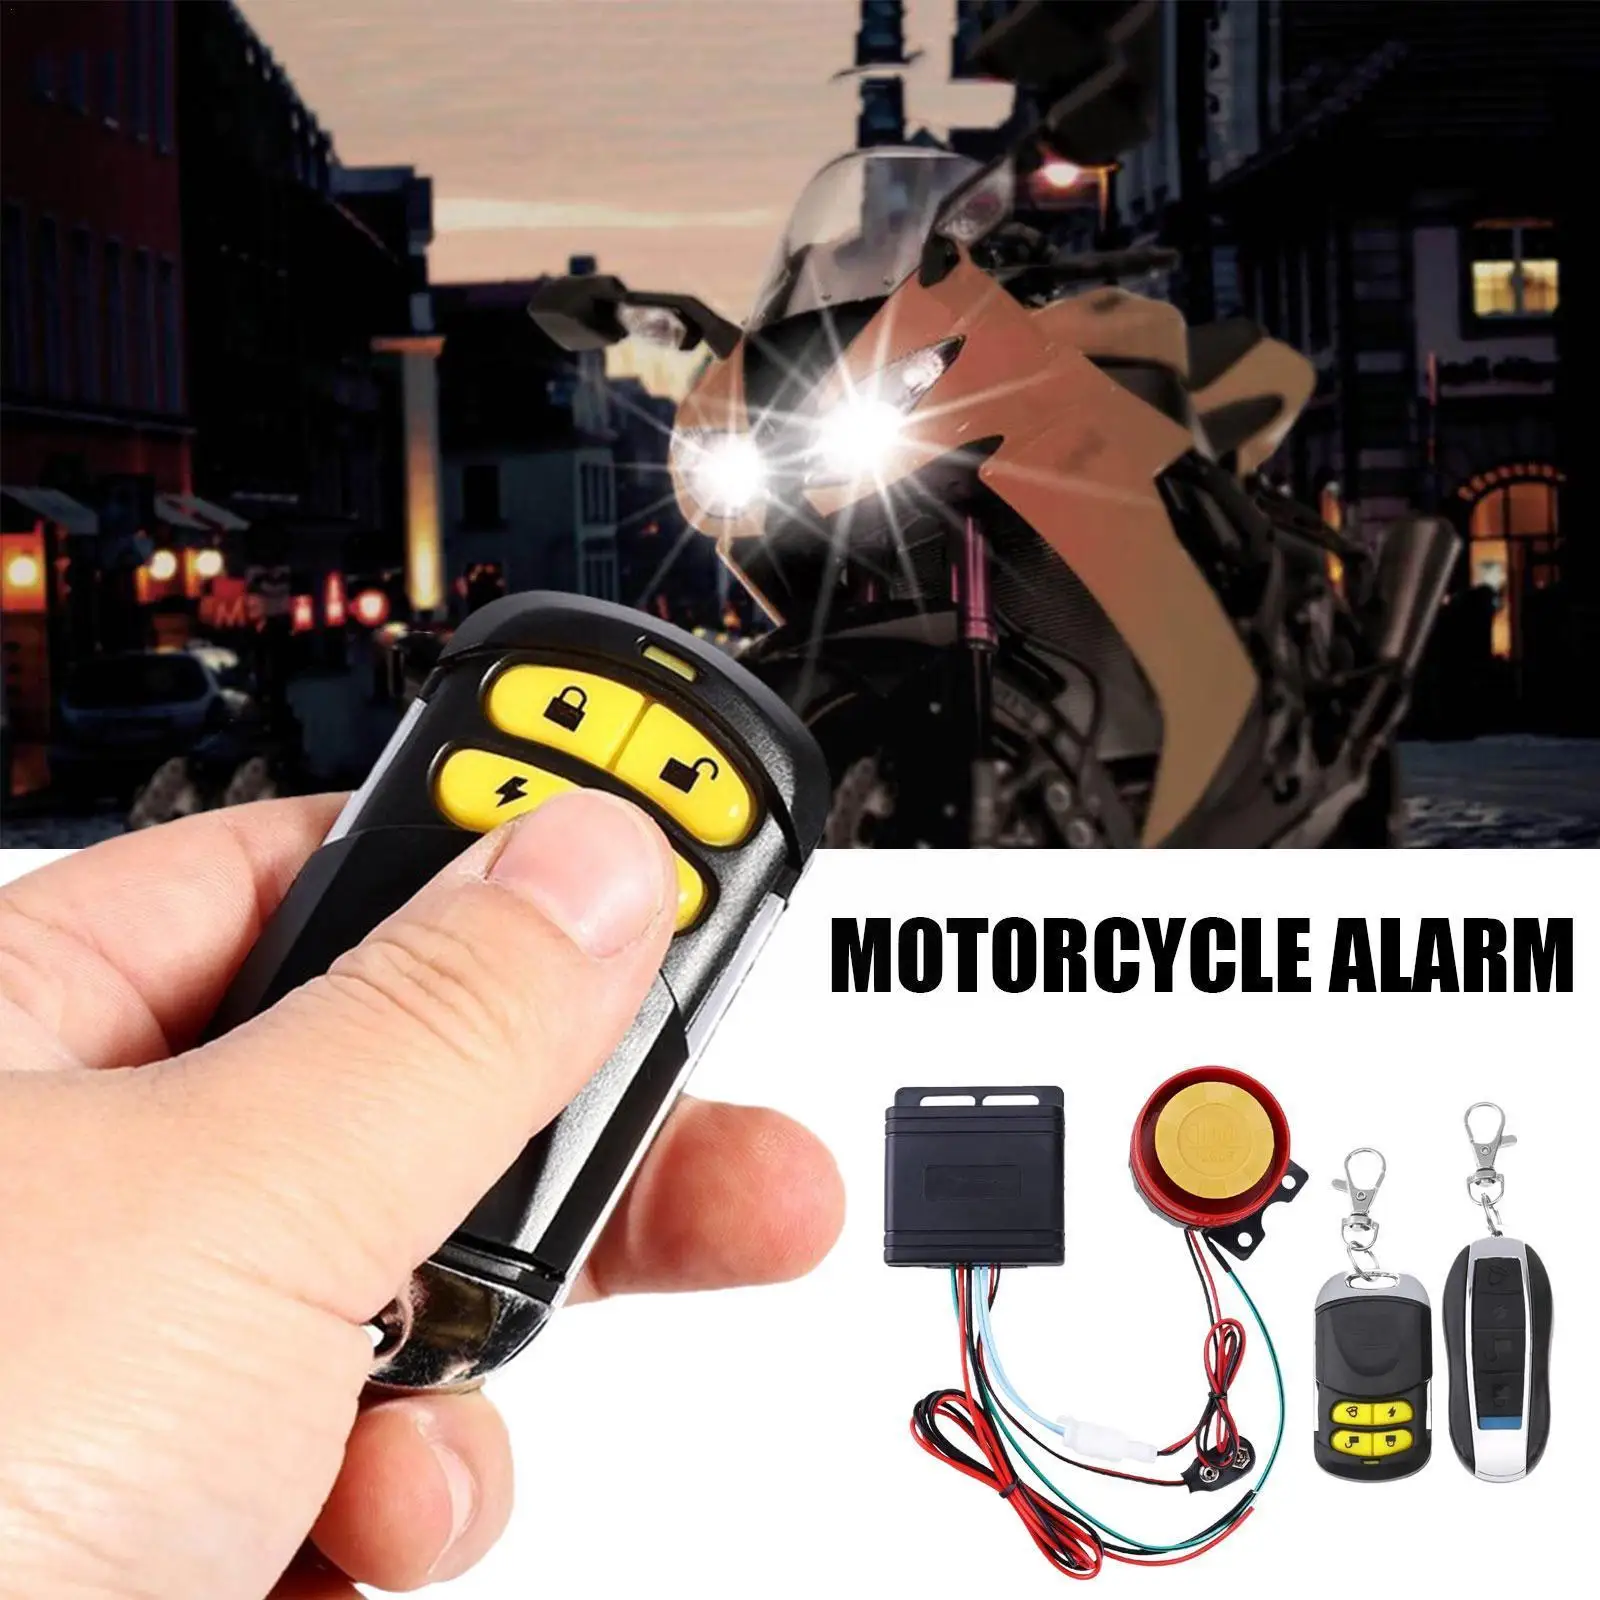 

Motorcycle Bike Anti-theft Security Alarm System 1set Waterproof Remote Burglar Motorbike Control Speaker Motorcycle 12v Al Y7j6